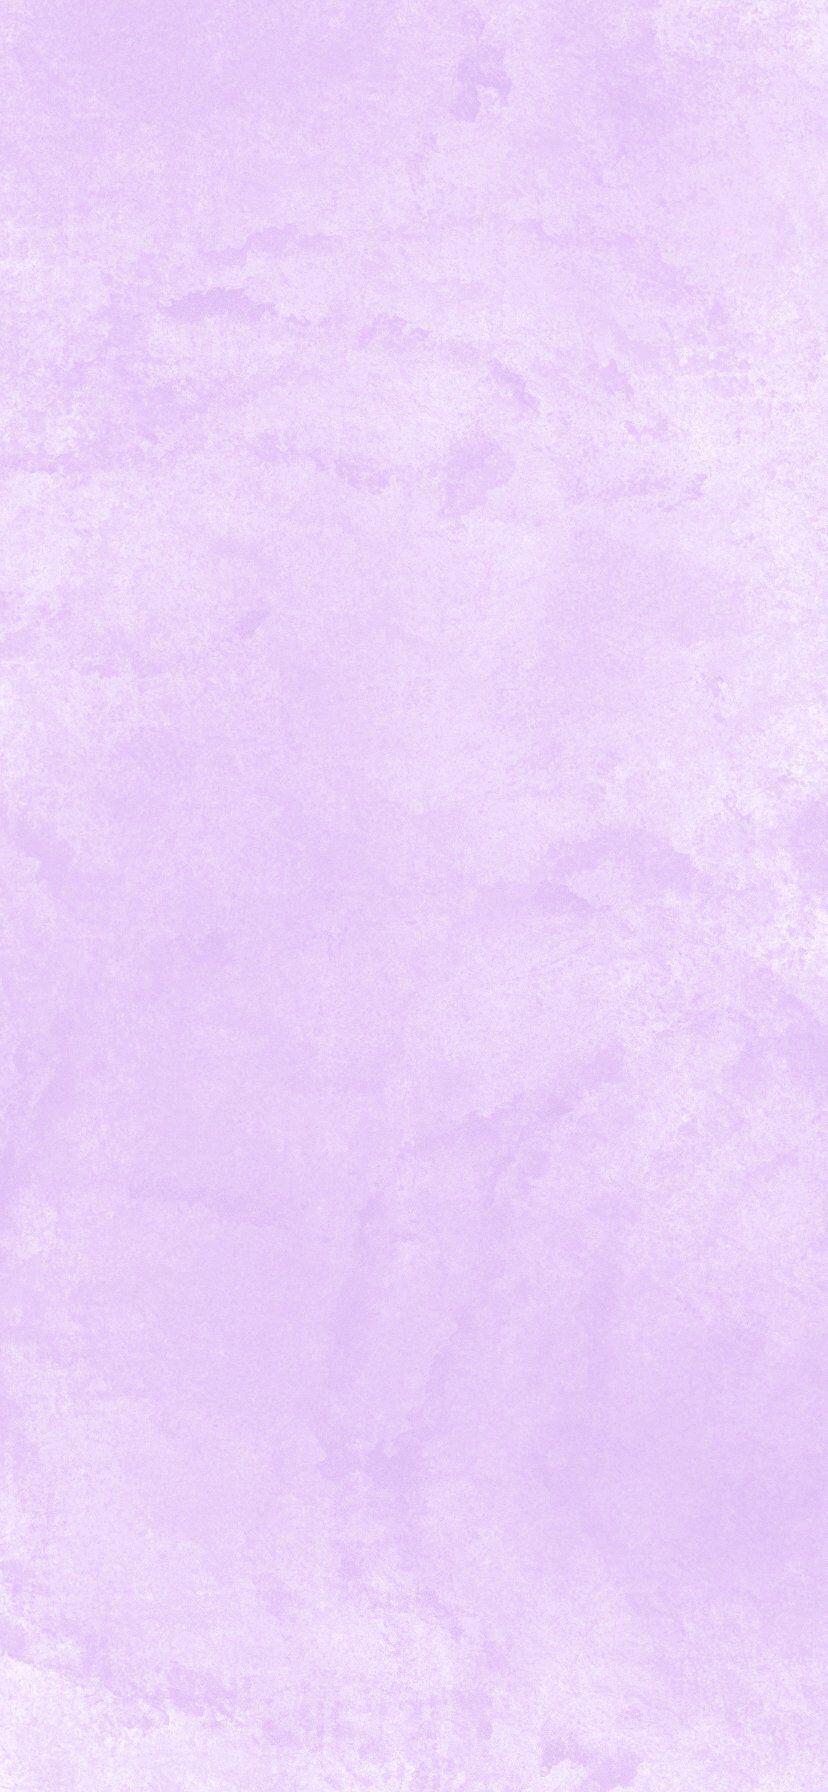 聊天背景紫色图片